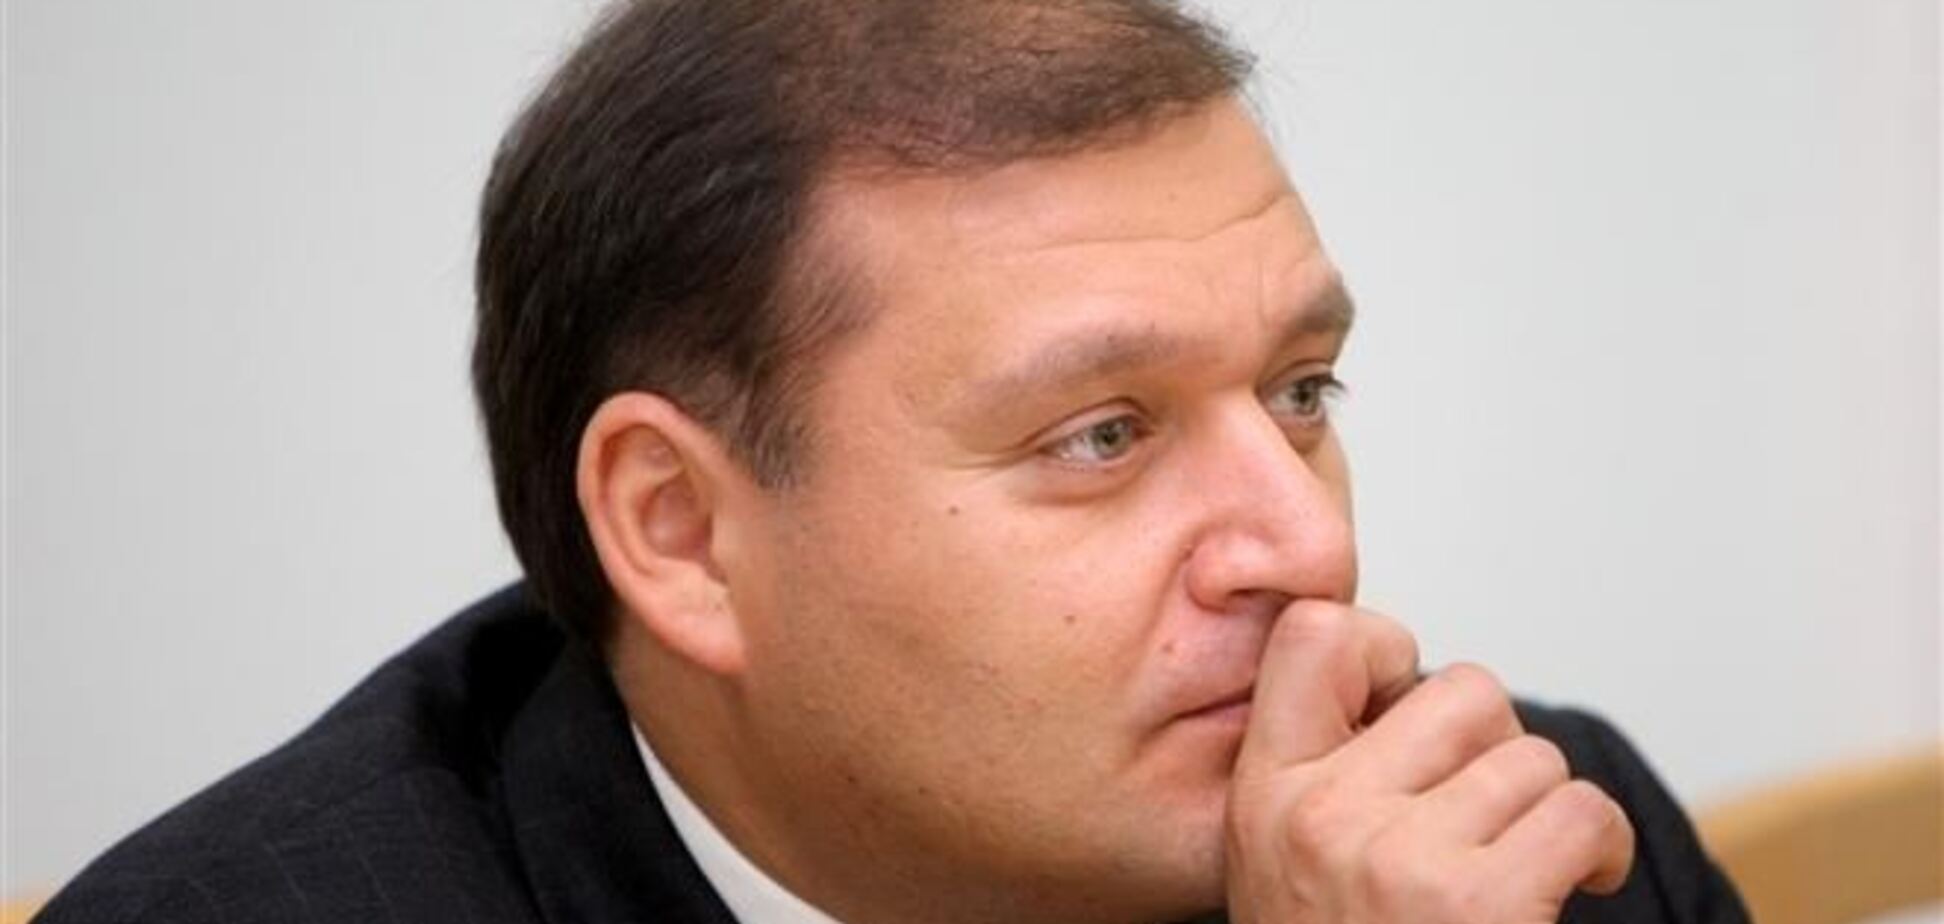 Добкин планирует выслать Задорнову пенку для бритья за высказывания о 'еврохохлах'